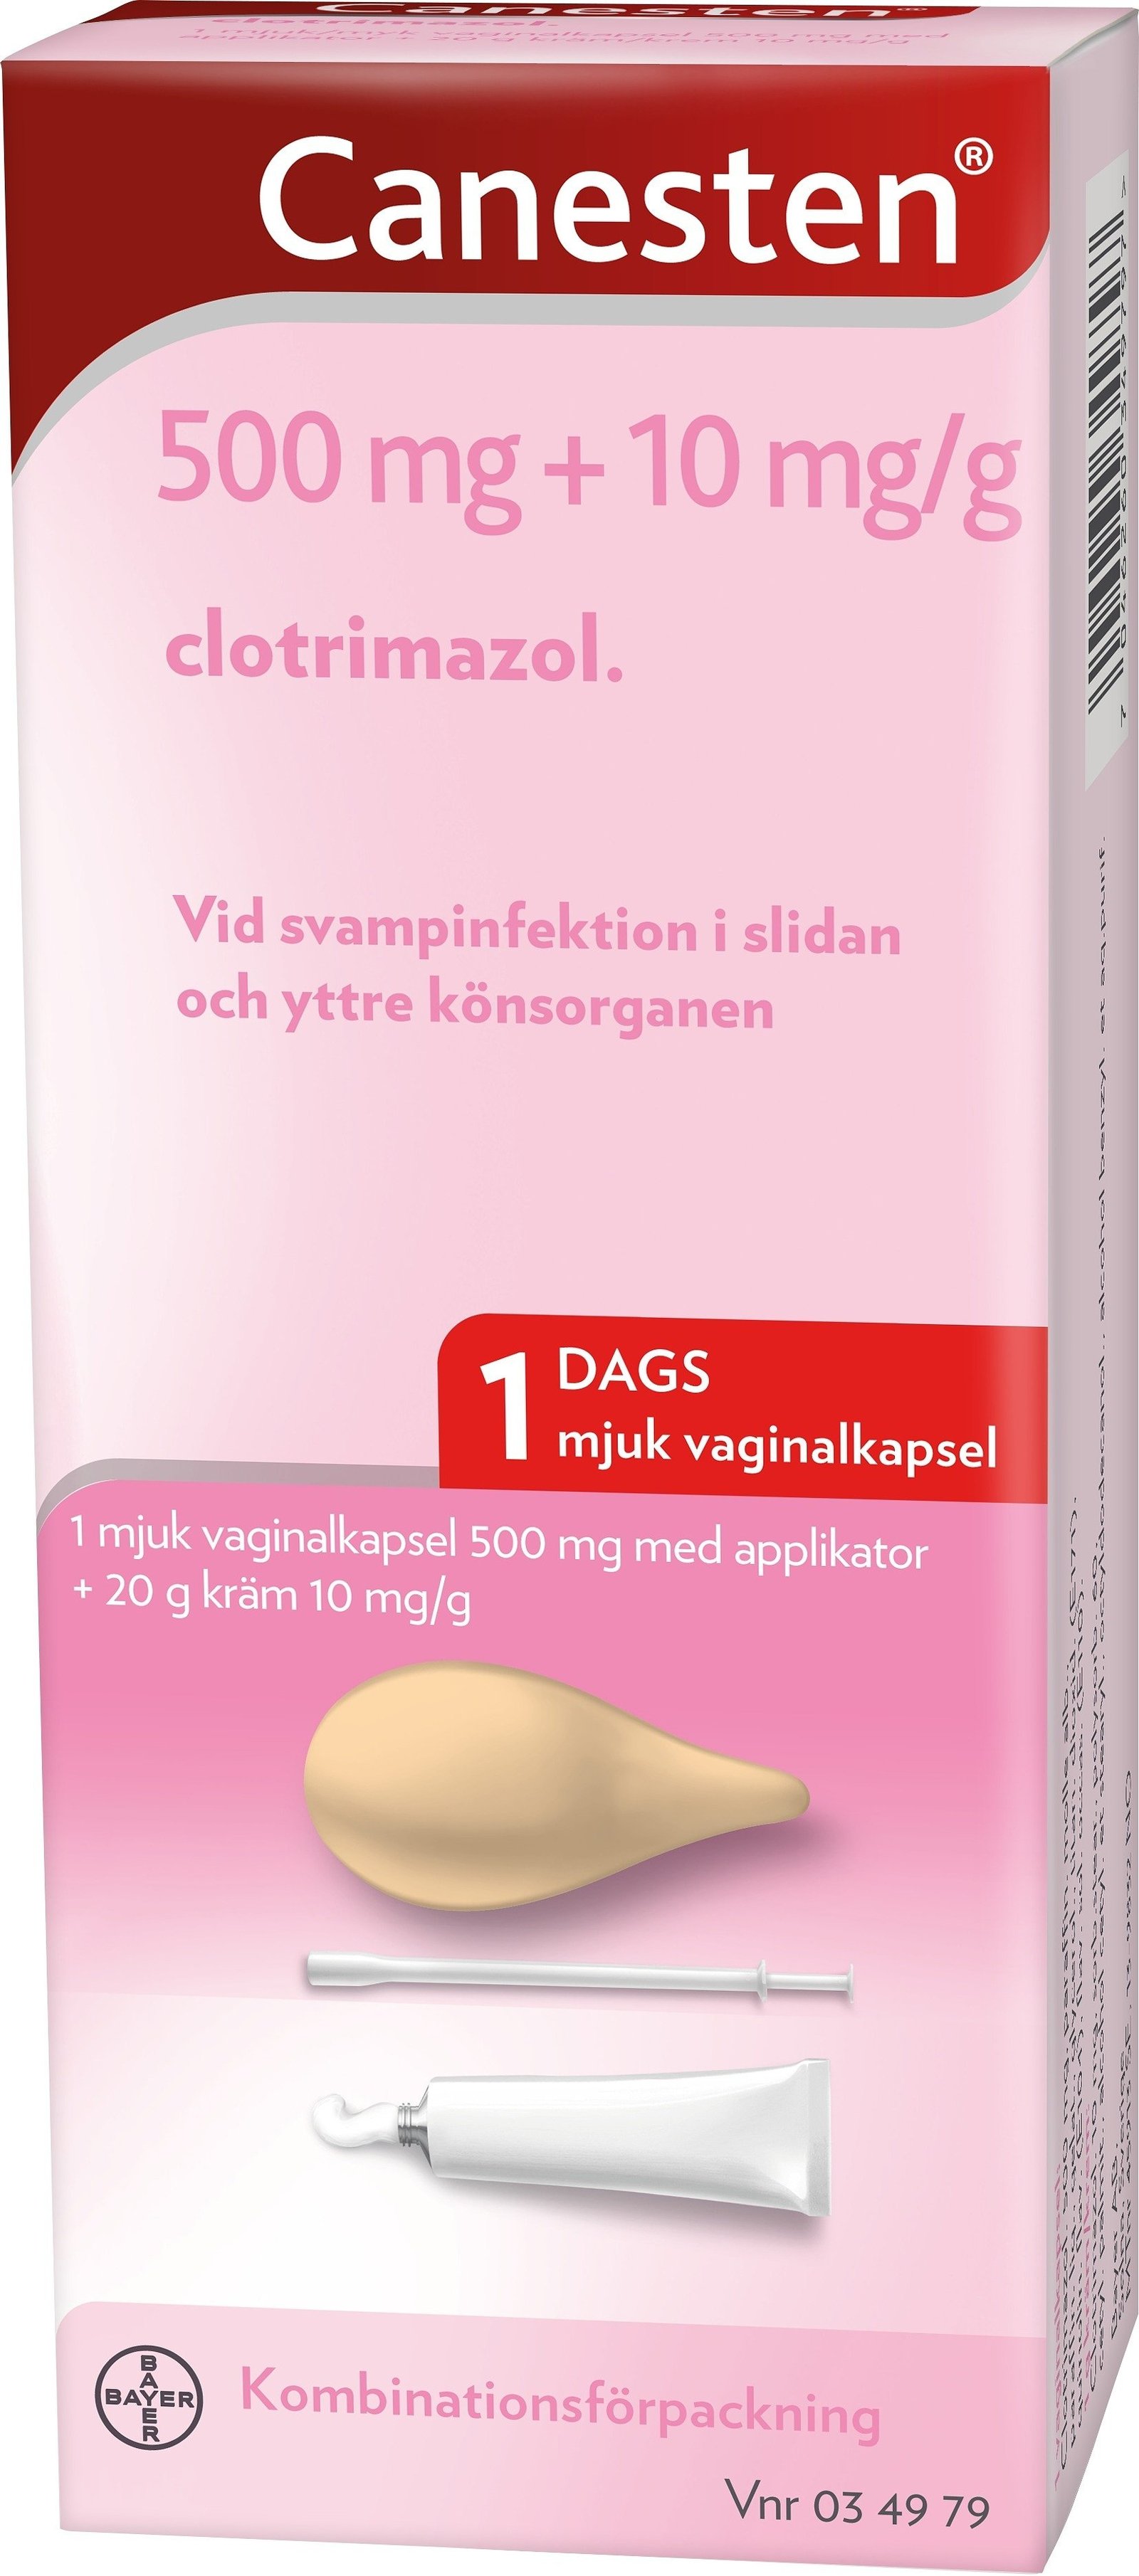 Kombinationsförpackning Mjuk Vaginalkapsel 500mg 1 st + 20g Vaginalkräm 10mg/g